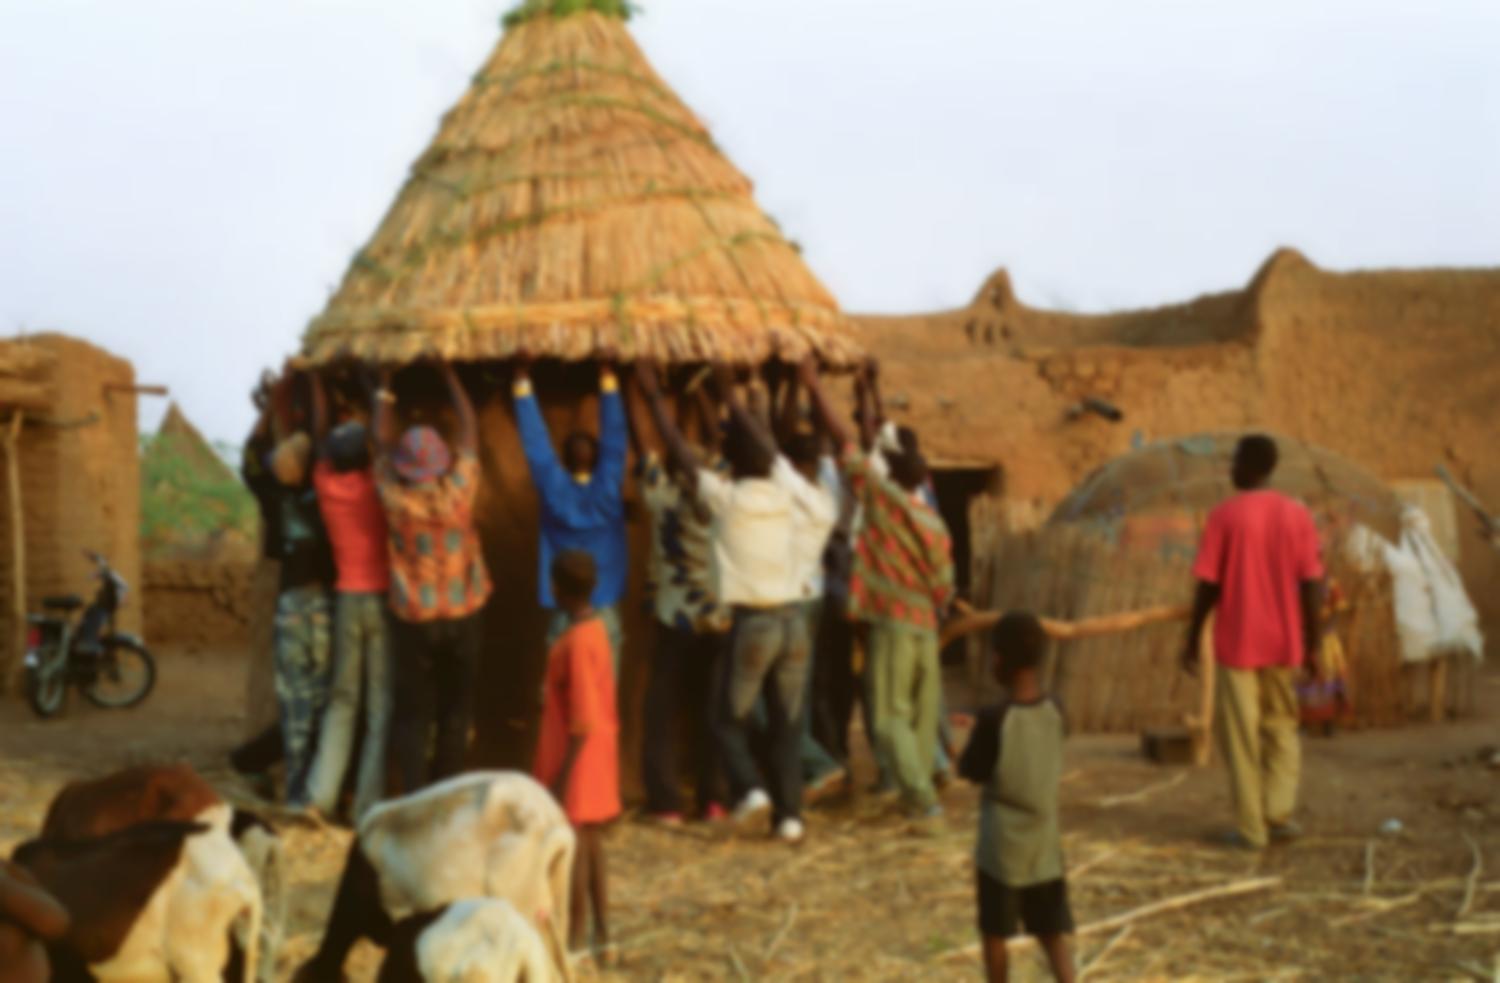 Des hommes soulèvent un toit conique fait de mil pour le poser sur un petit édifice circulaire : une cuisine. Bosseye Dogabe, Burkina Faso, mai 2008.